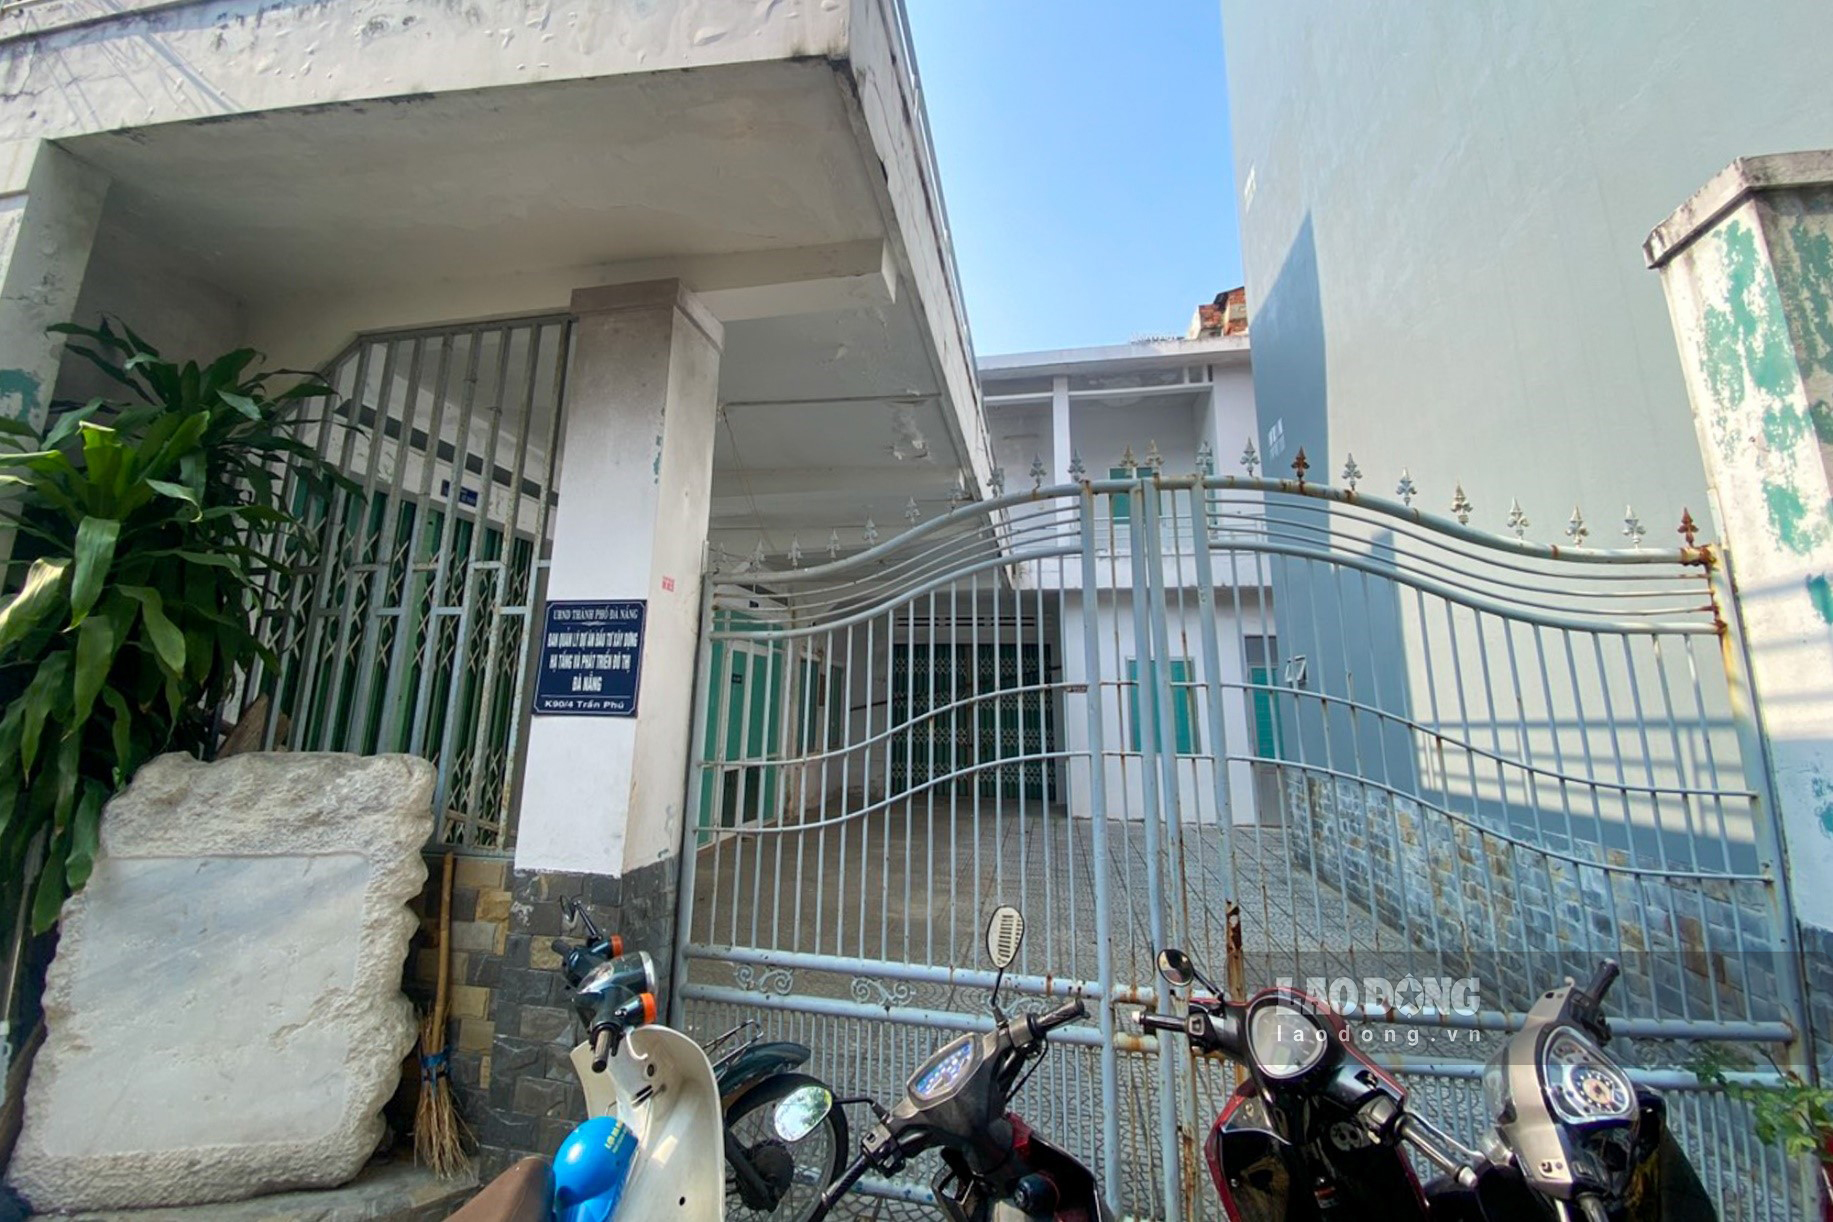 Nhà đất số 90/4 Trần Phú (P. Hải Châu 1) với diện tích đất 331m2 sẽ được chuyển đổi công năng sử dụng làm Trung tâm văn hóa phường Hải Châu 1.